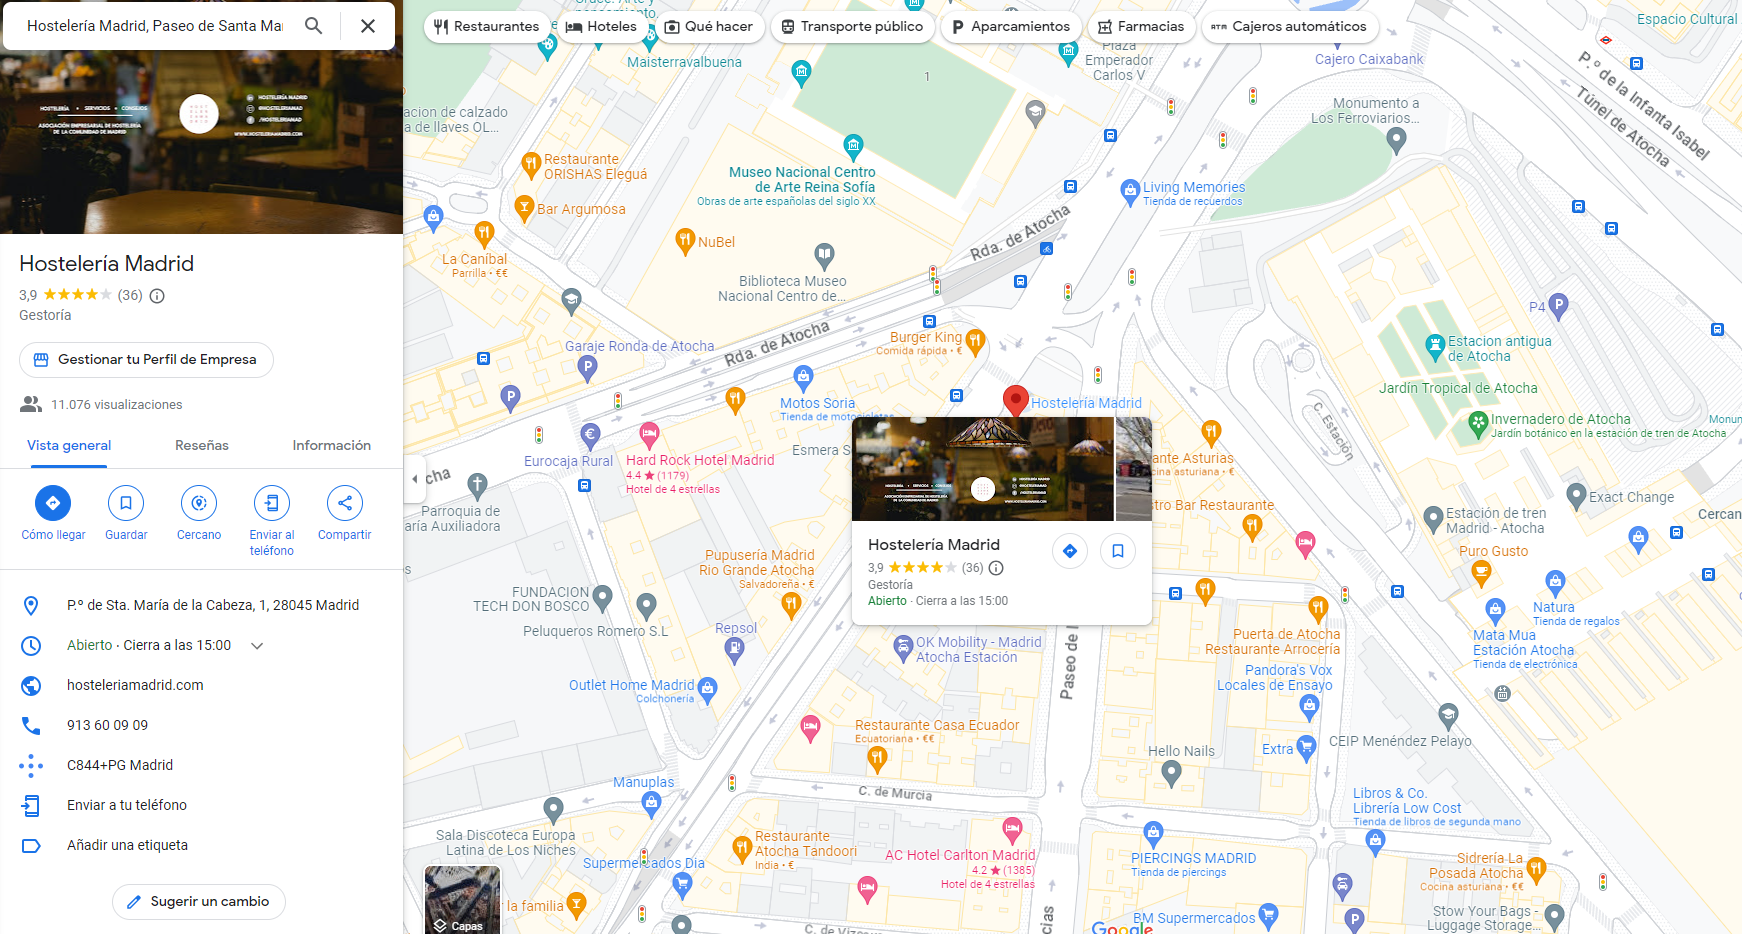 ¿Cómo poner mi negocio de hostelería en Google Maps? - La Viña